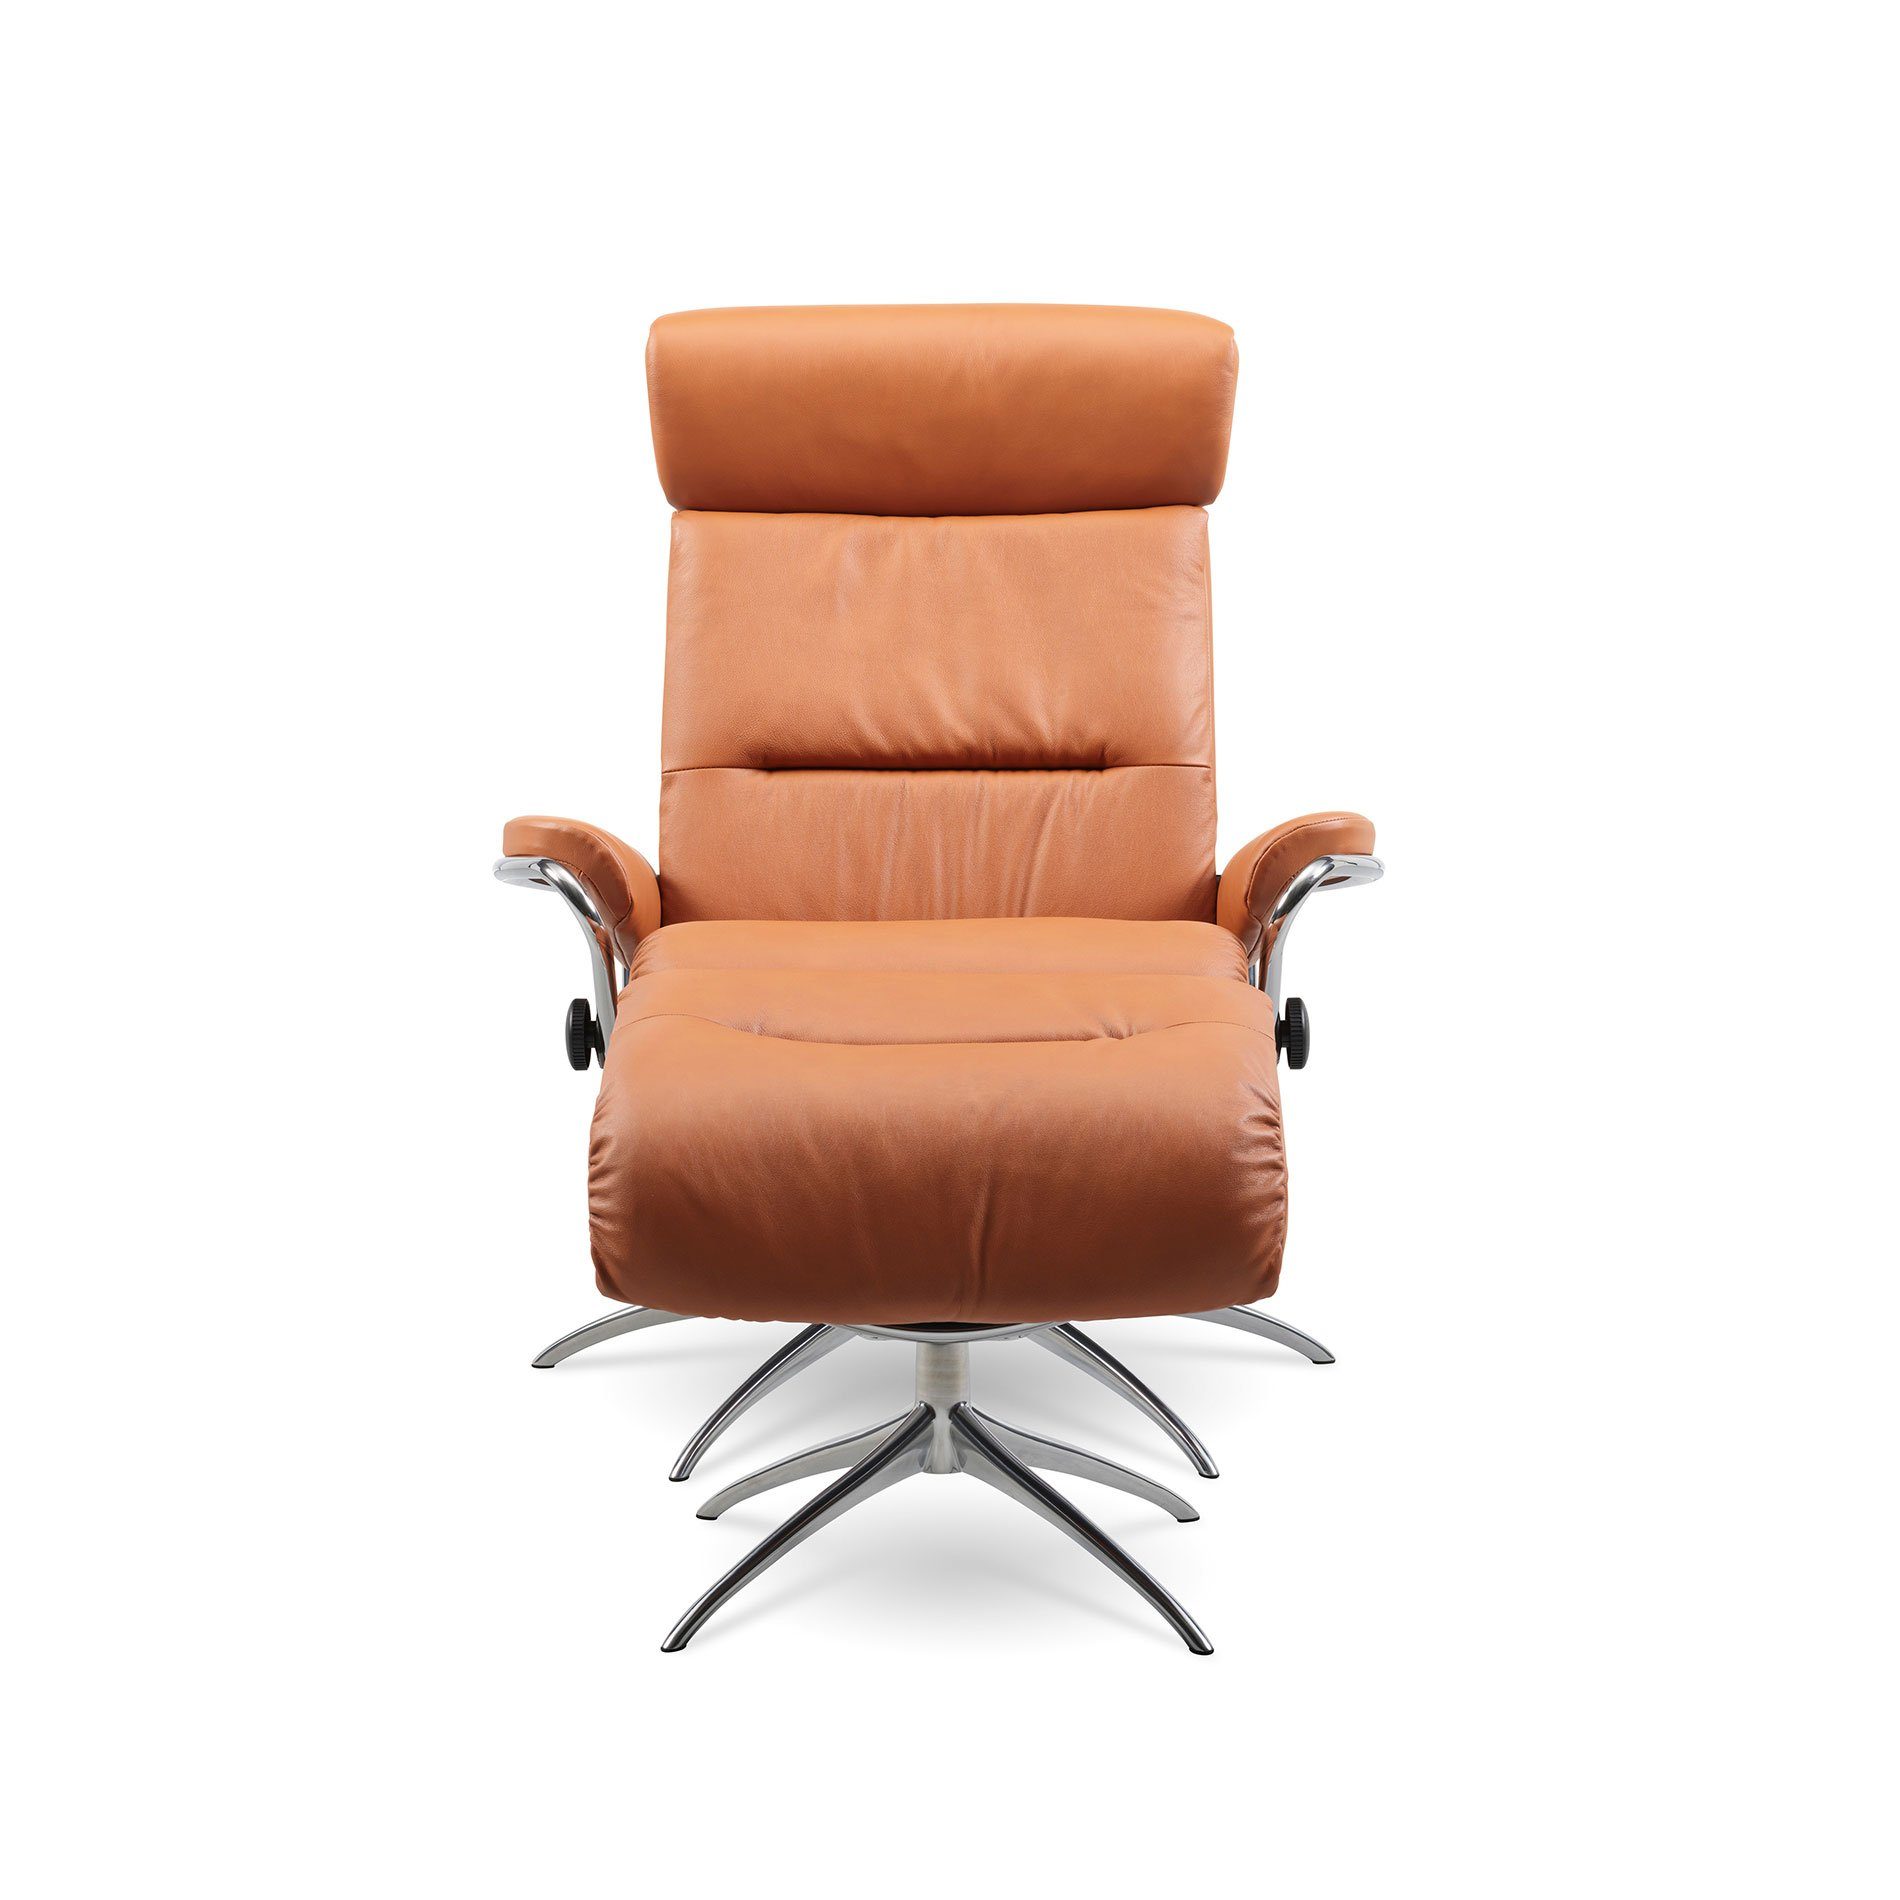 Stressless „Tokyo“ Sessel mit Hocker und Lederbezug Paloma in der Farbe New Cognac in frontaler Ansicht.